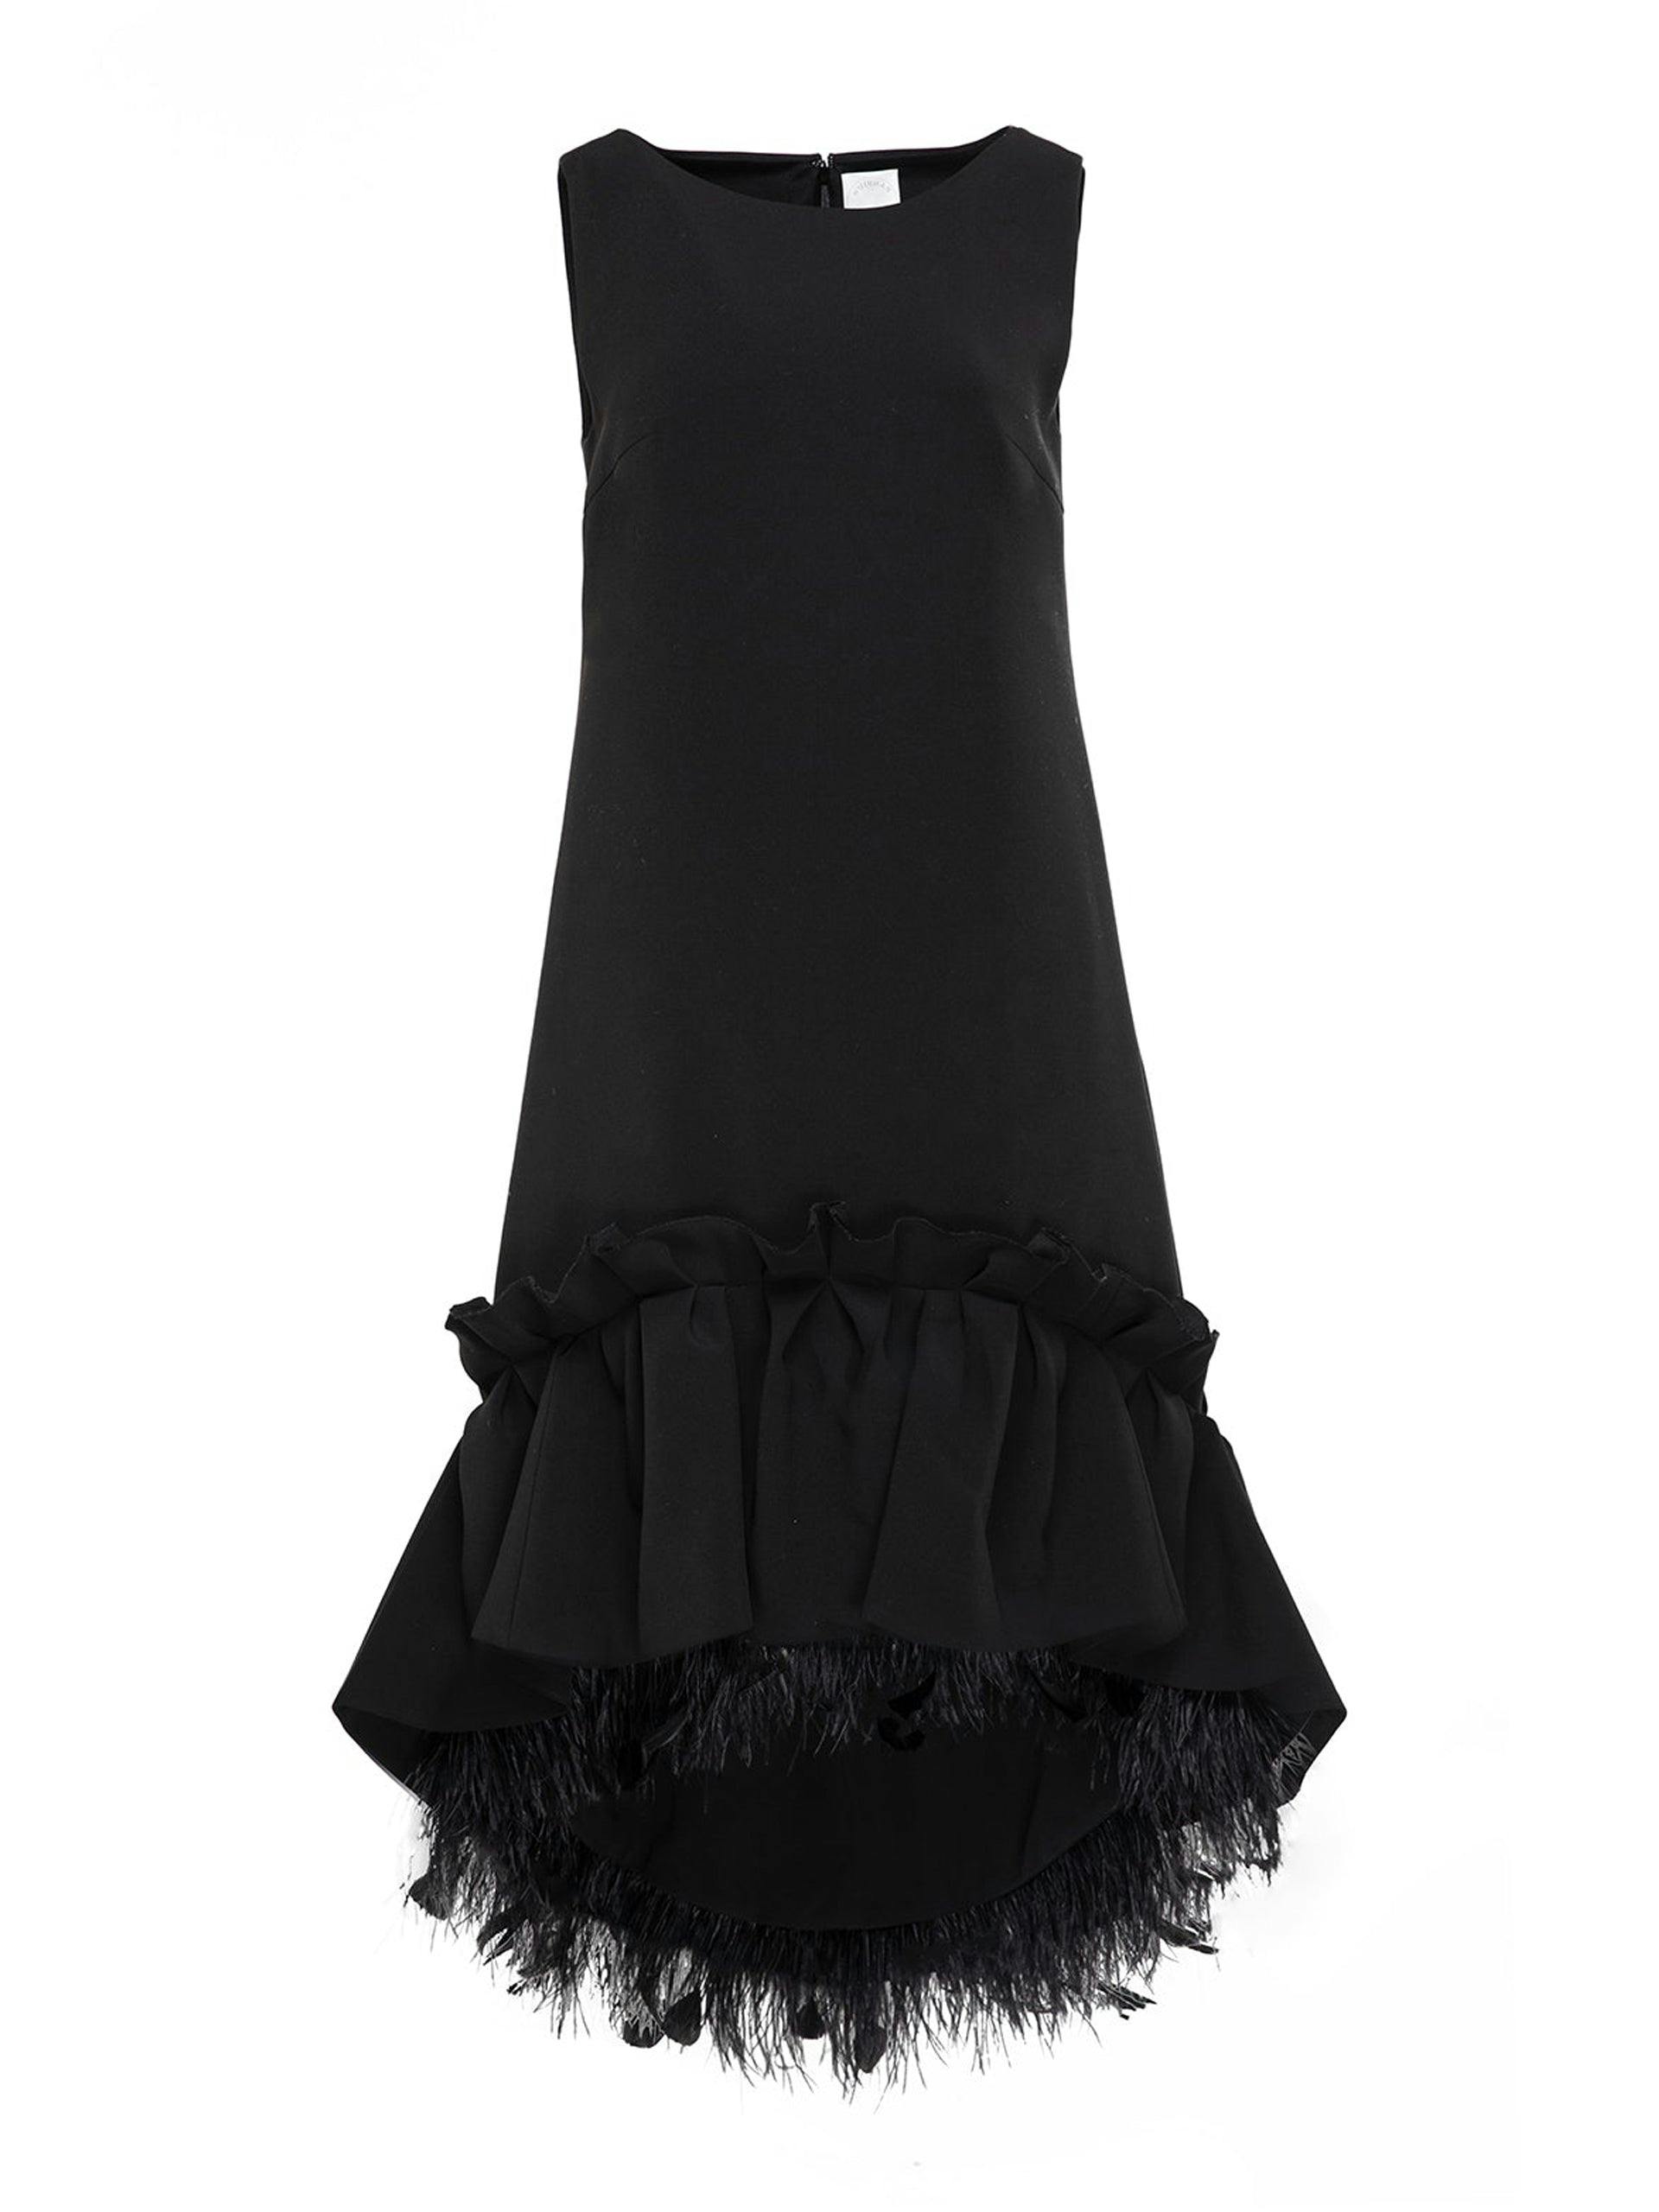 Jodie black crepe dress